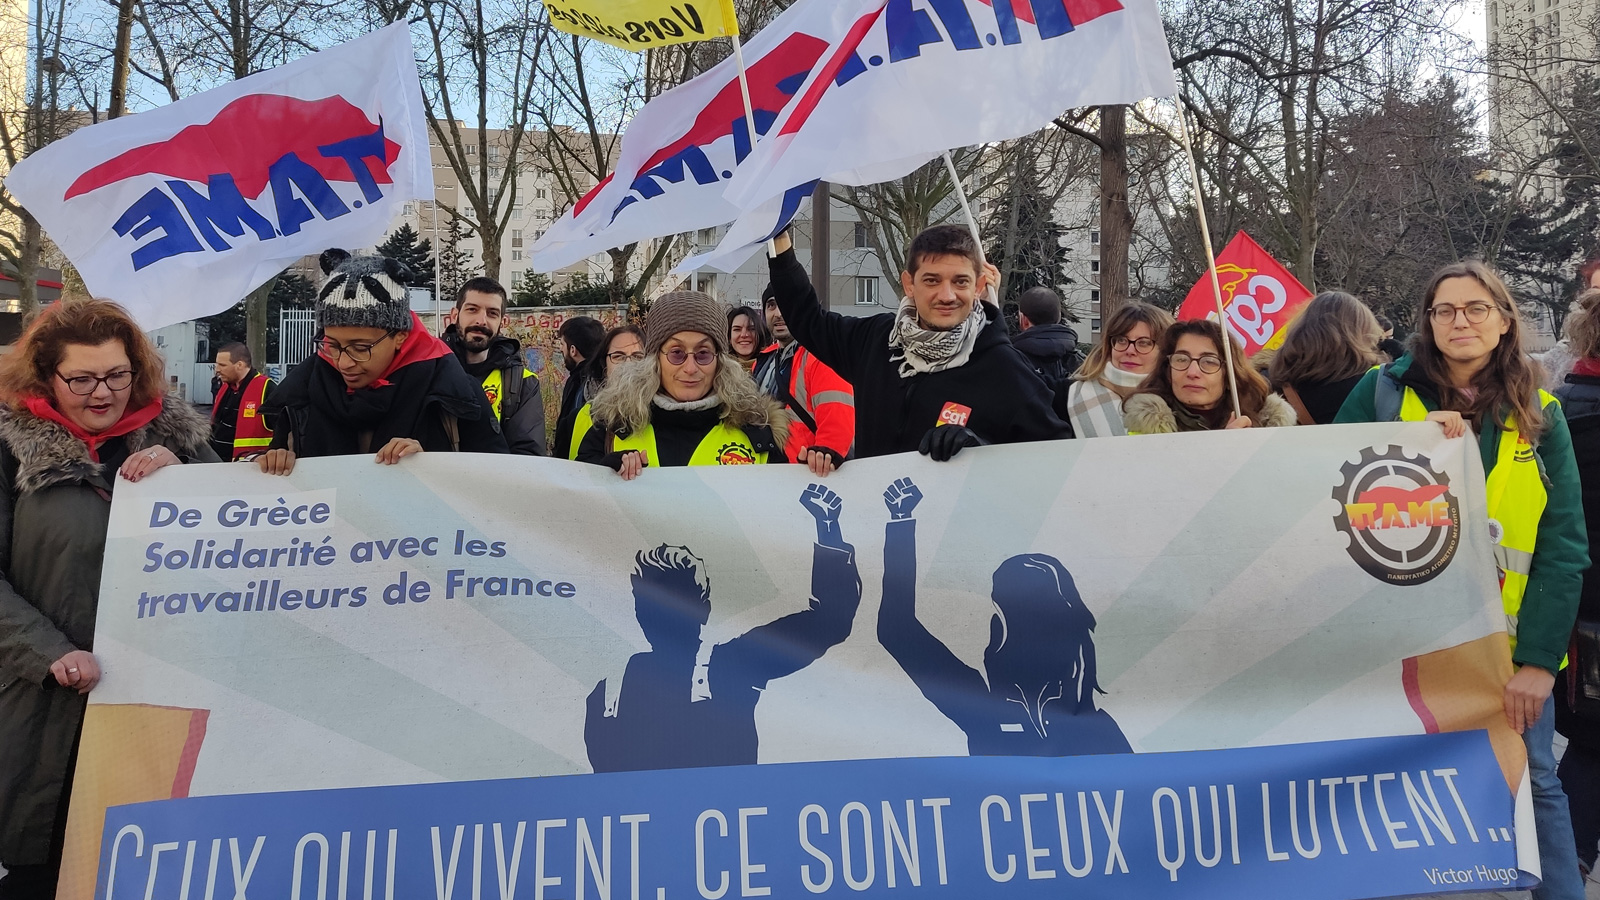 PAME: Vive la lutte des travailleurs de France!